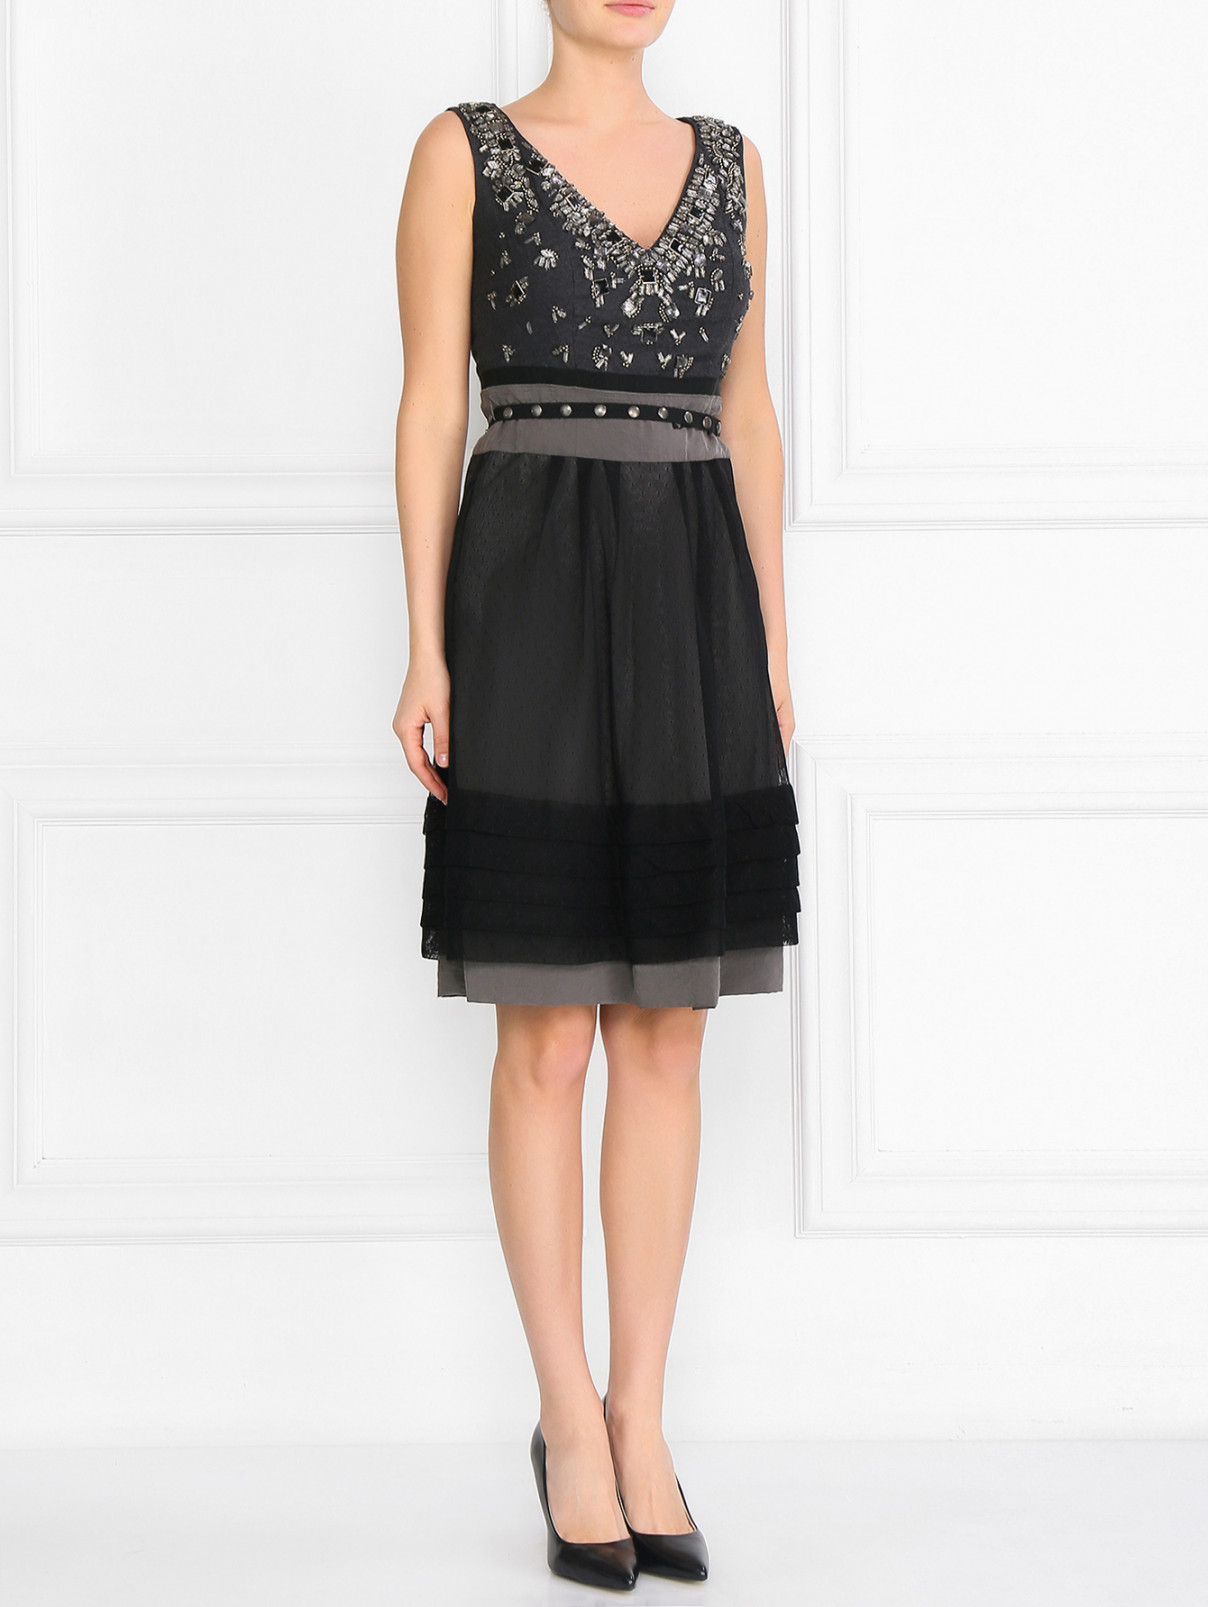 Платье из шелка с контрастными вставками декорированное камнями Antonio Marras  –  Модель Общий вид  – Цвет:  Серый